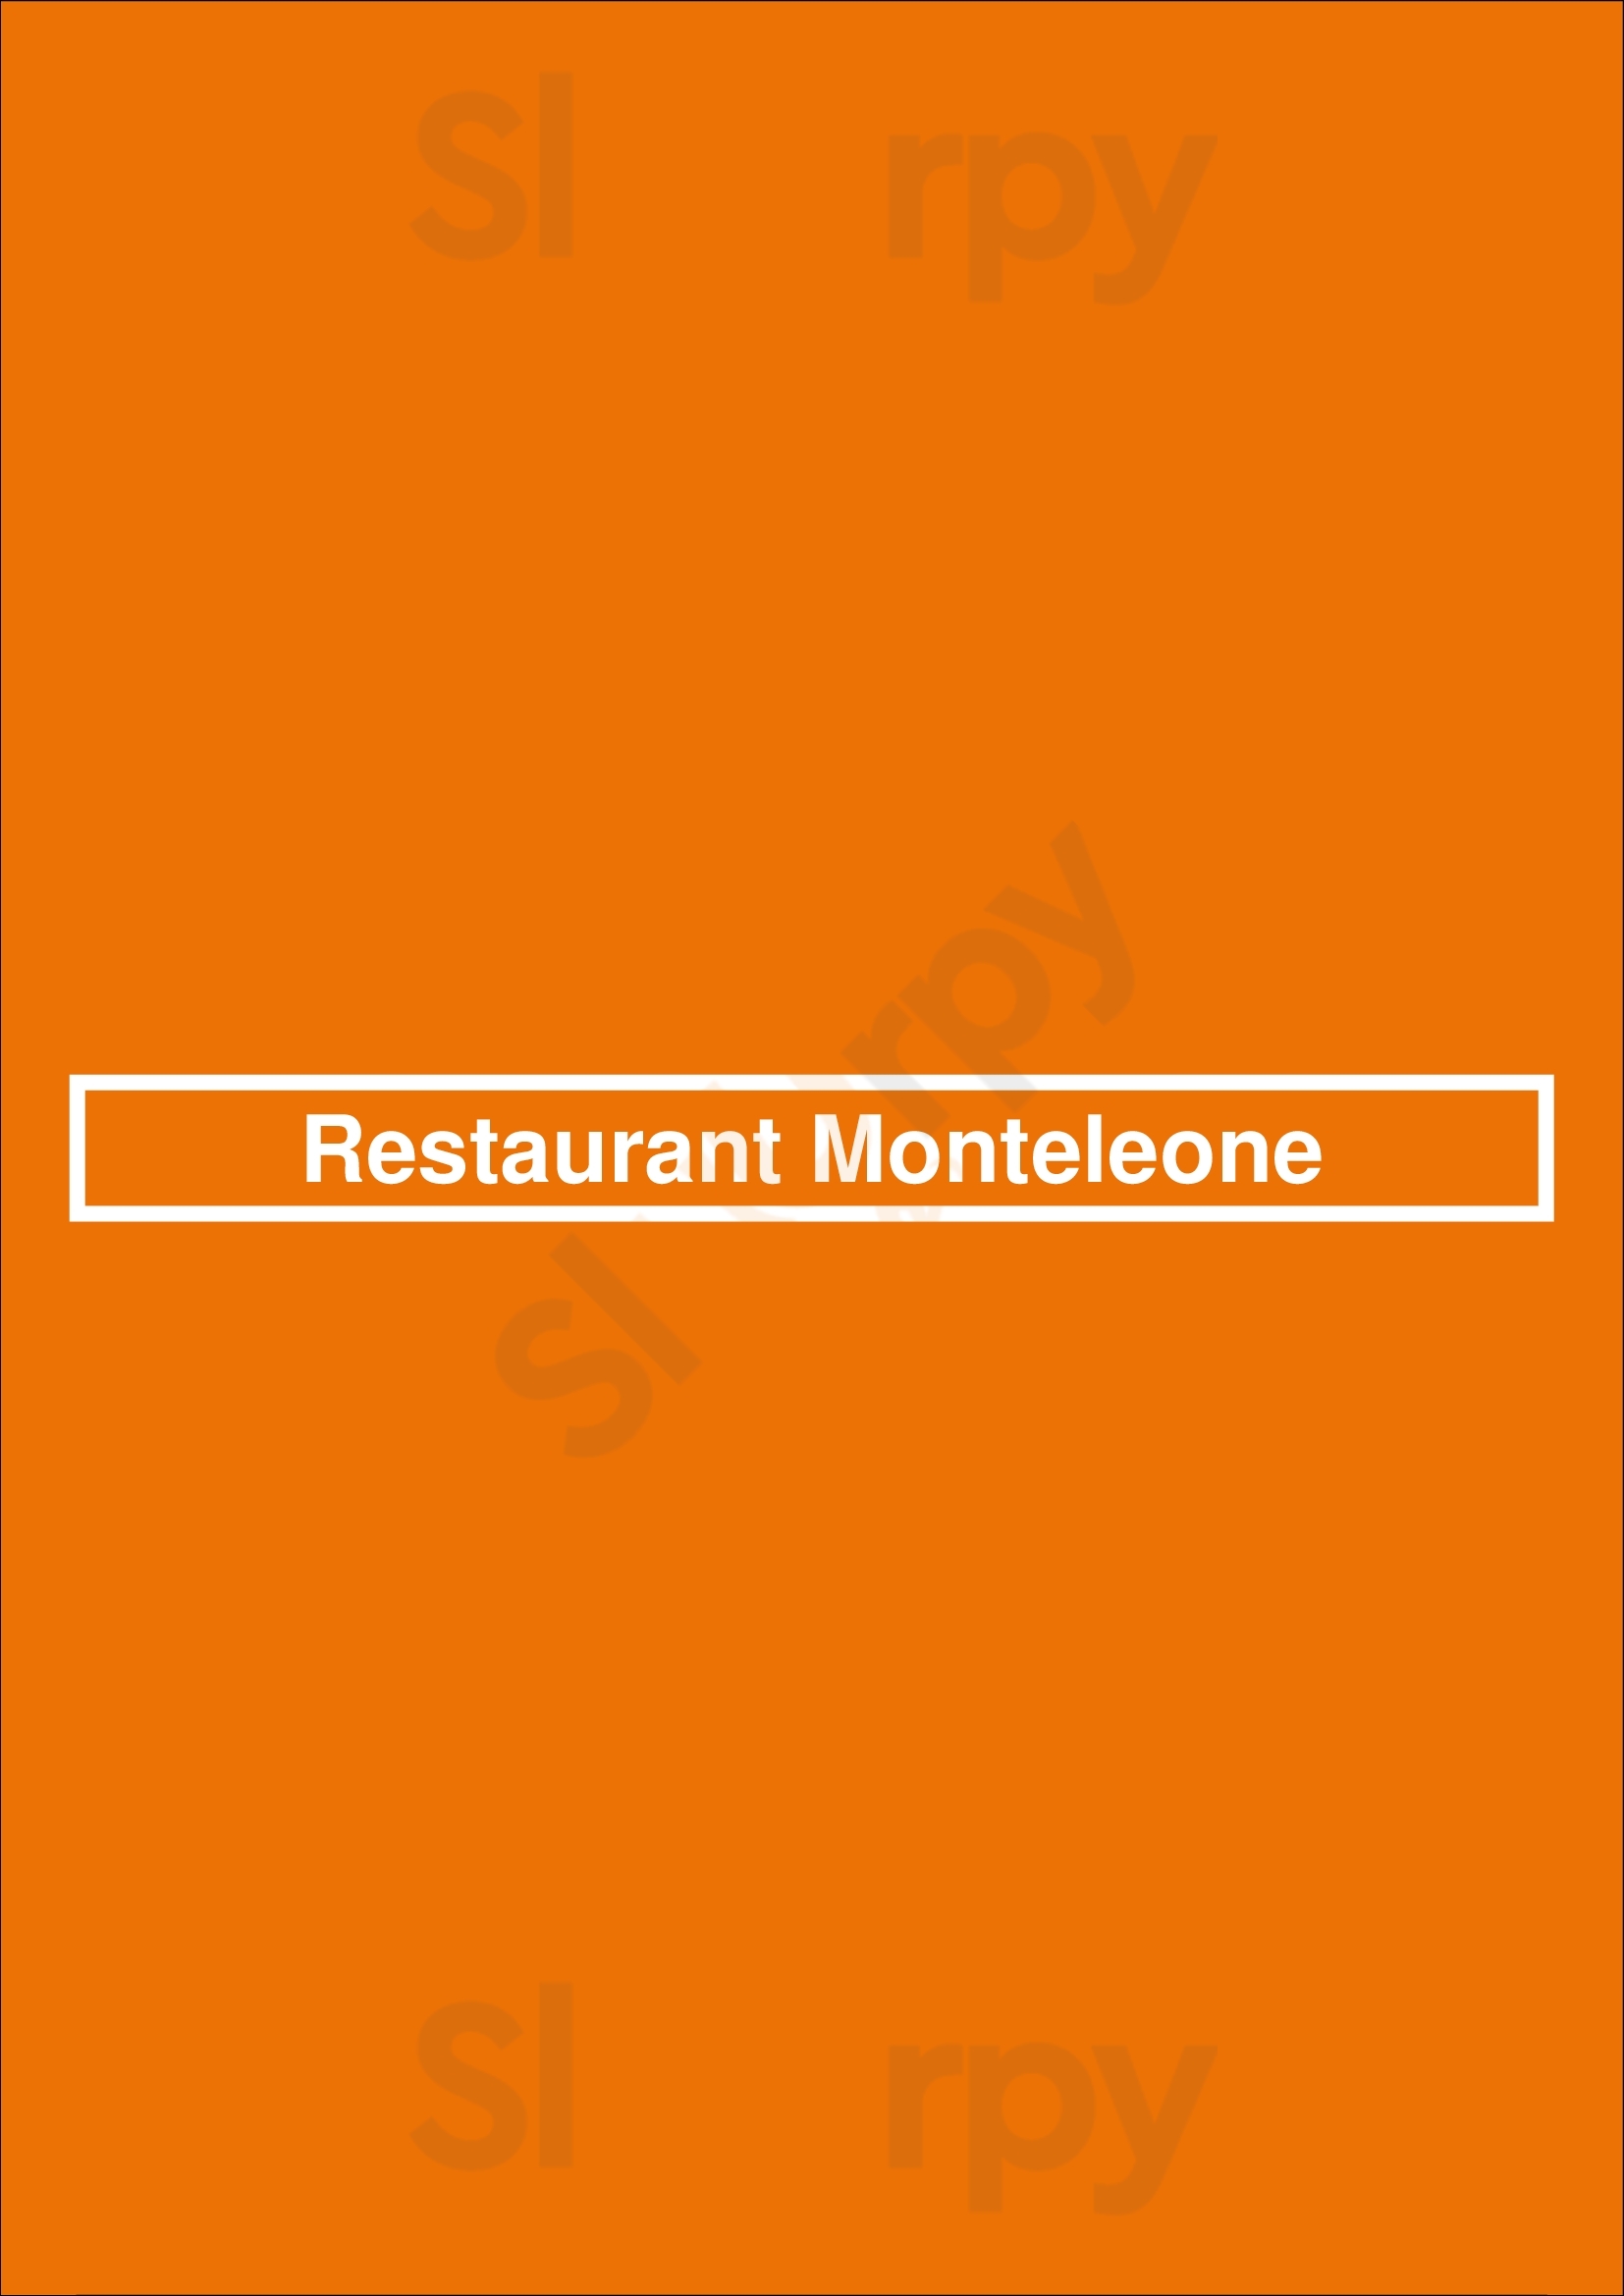 Restaurant Monteleone Paris Menu - 1